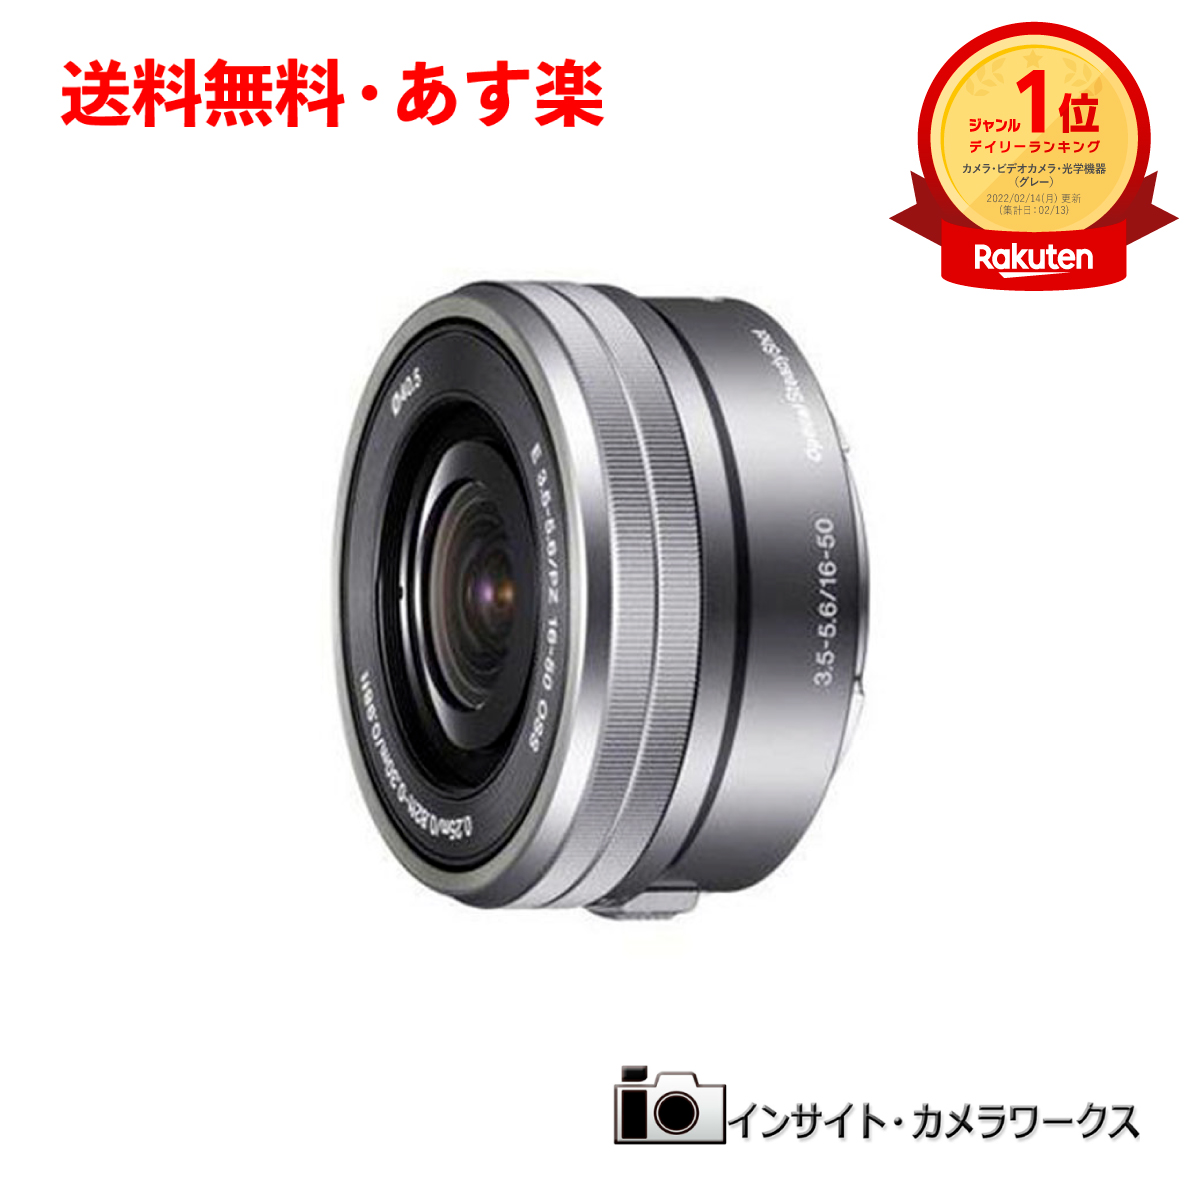  SONY レンズ 標準 標準ズームレンズ E PZ 16-50mm F3.5-5.6 OSS SELP1650 シルバー グレー ソニー 交換レンズ